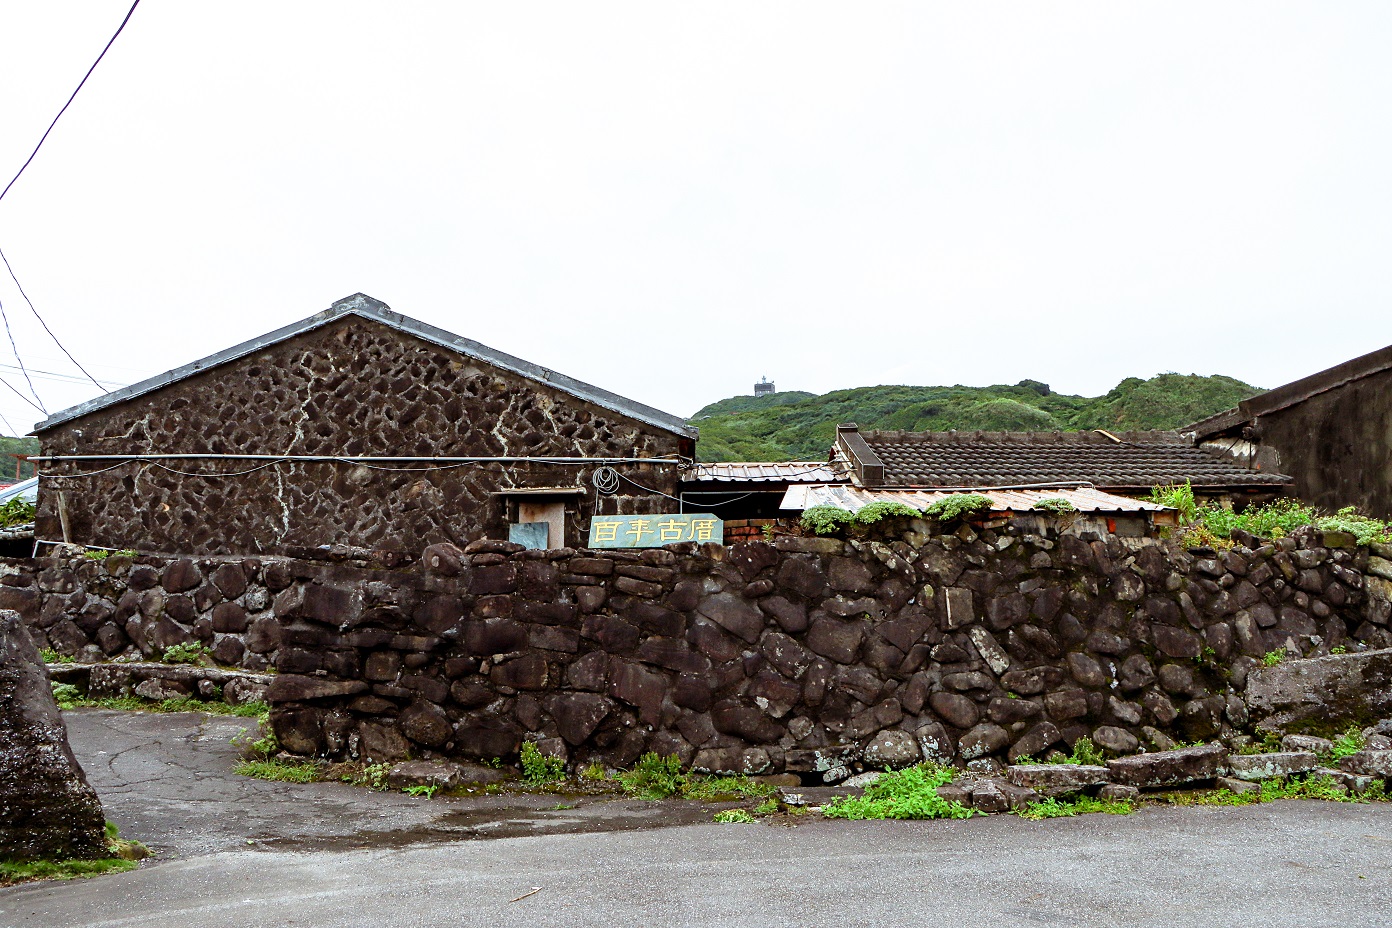 來到卯澳漁村欣賞百年石頭屋，是不能錯過的獨家的美拍景點